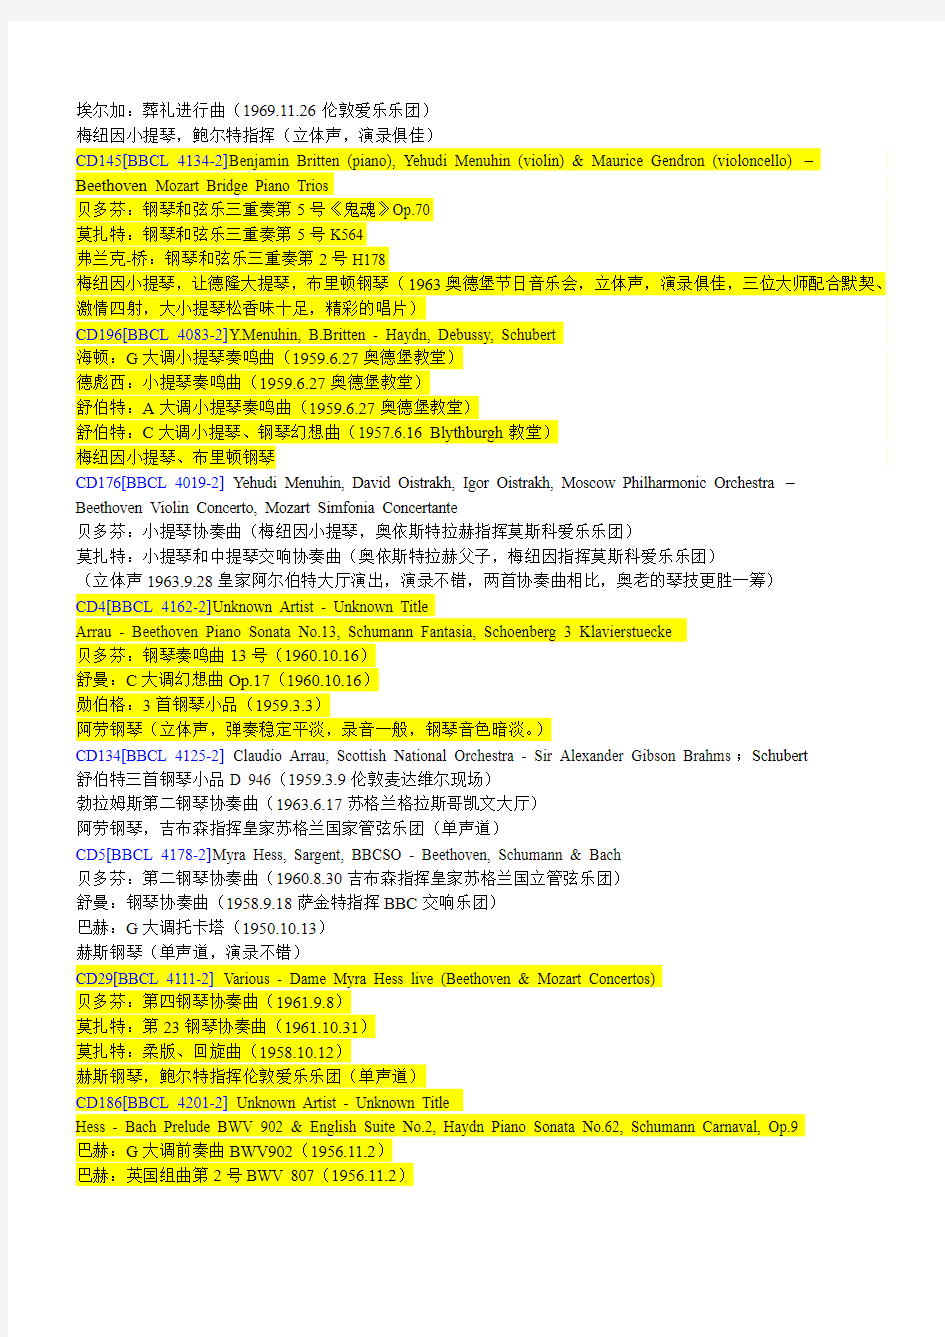 090411_A大【BBC—传奇系列】207张中文详细曲目、录音、演绎全攻略!_感谢会员“为什么呢!”制作